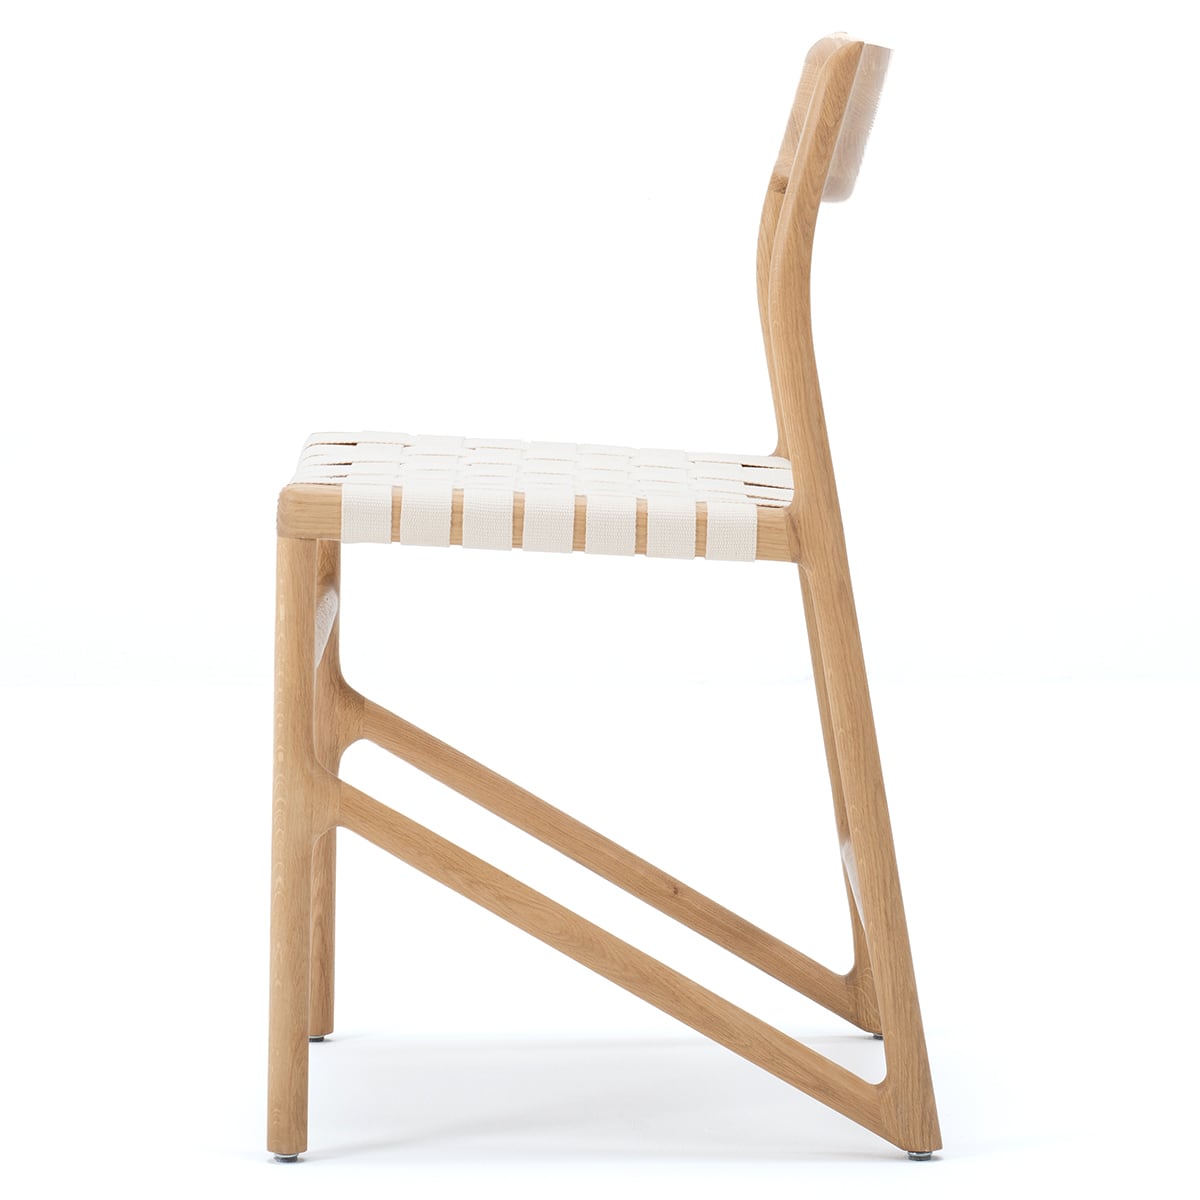 FAWN - chaise  - Chêne massif, finition huilé naturel, sangle de coton blanc